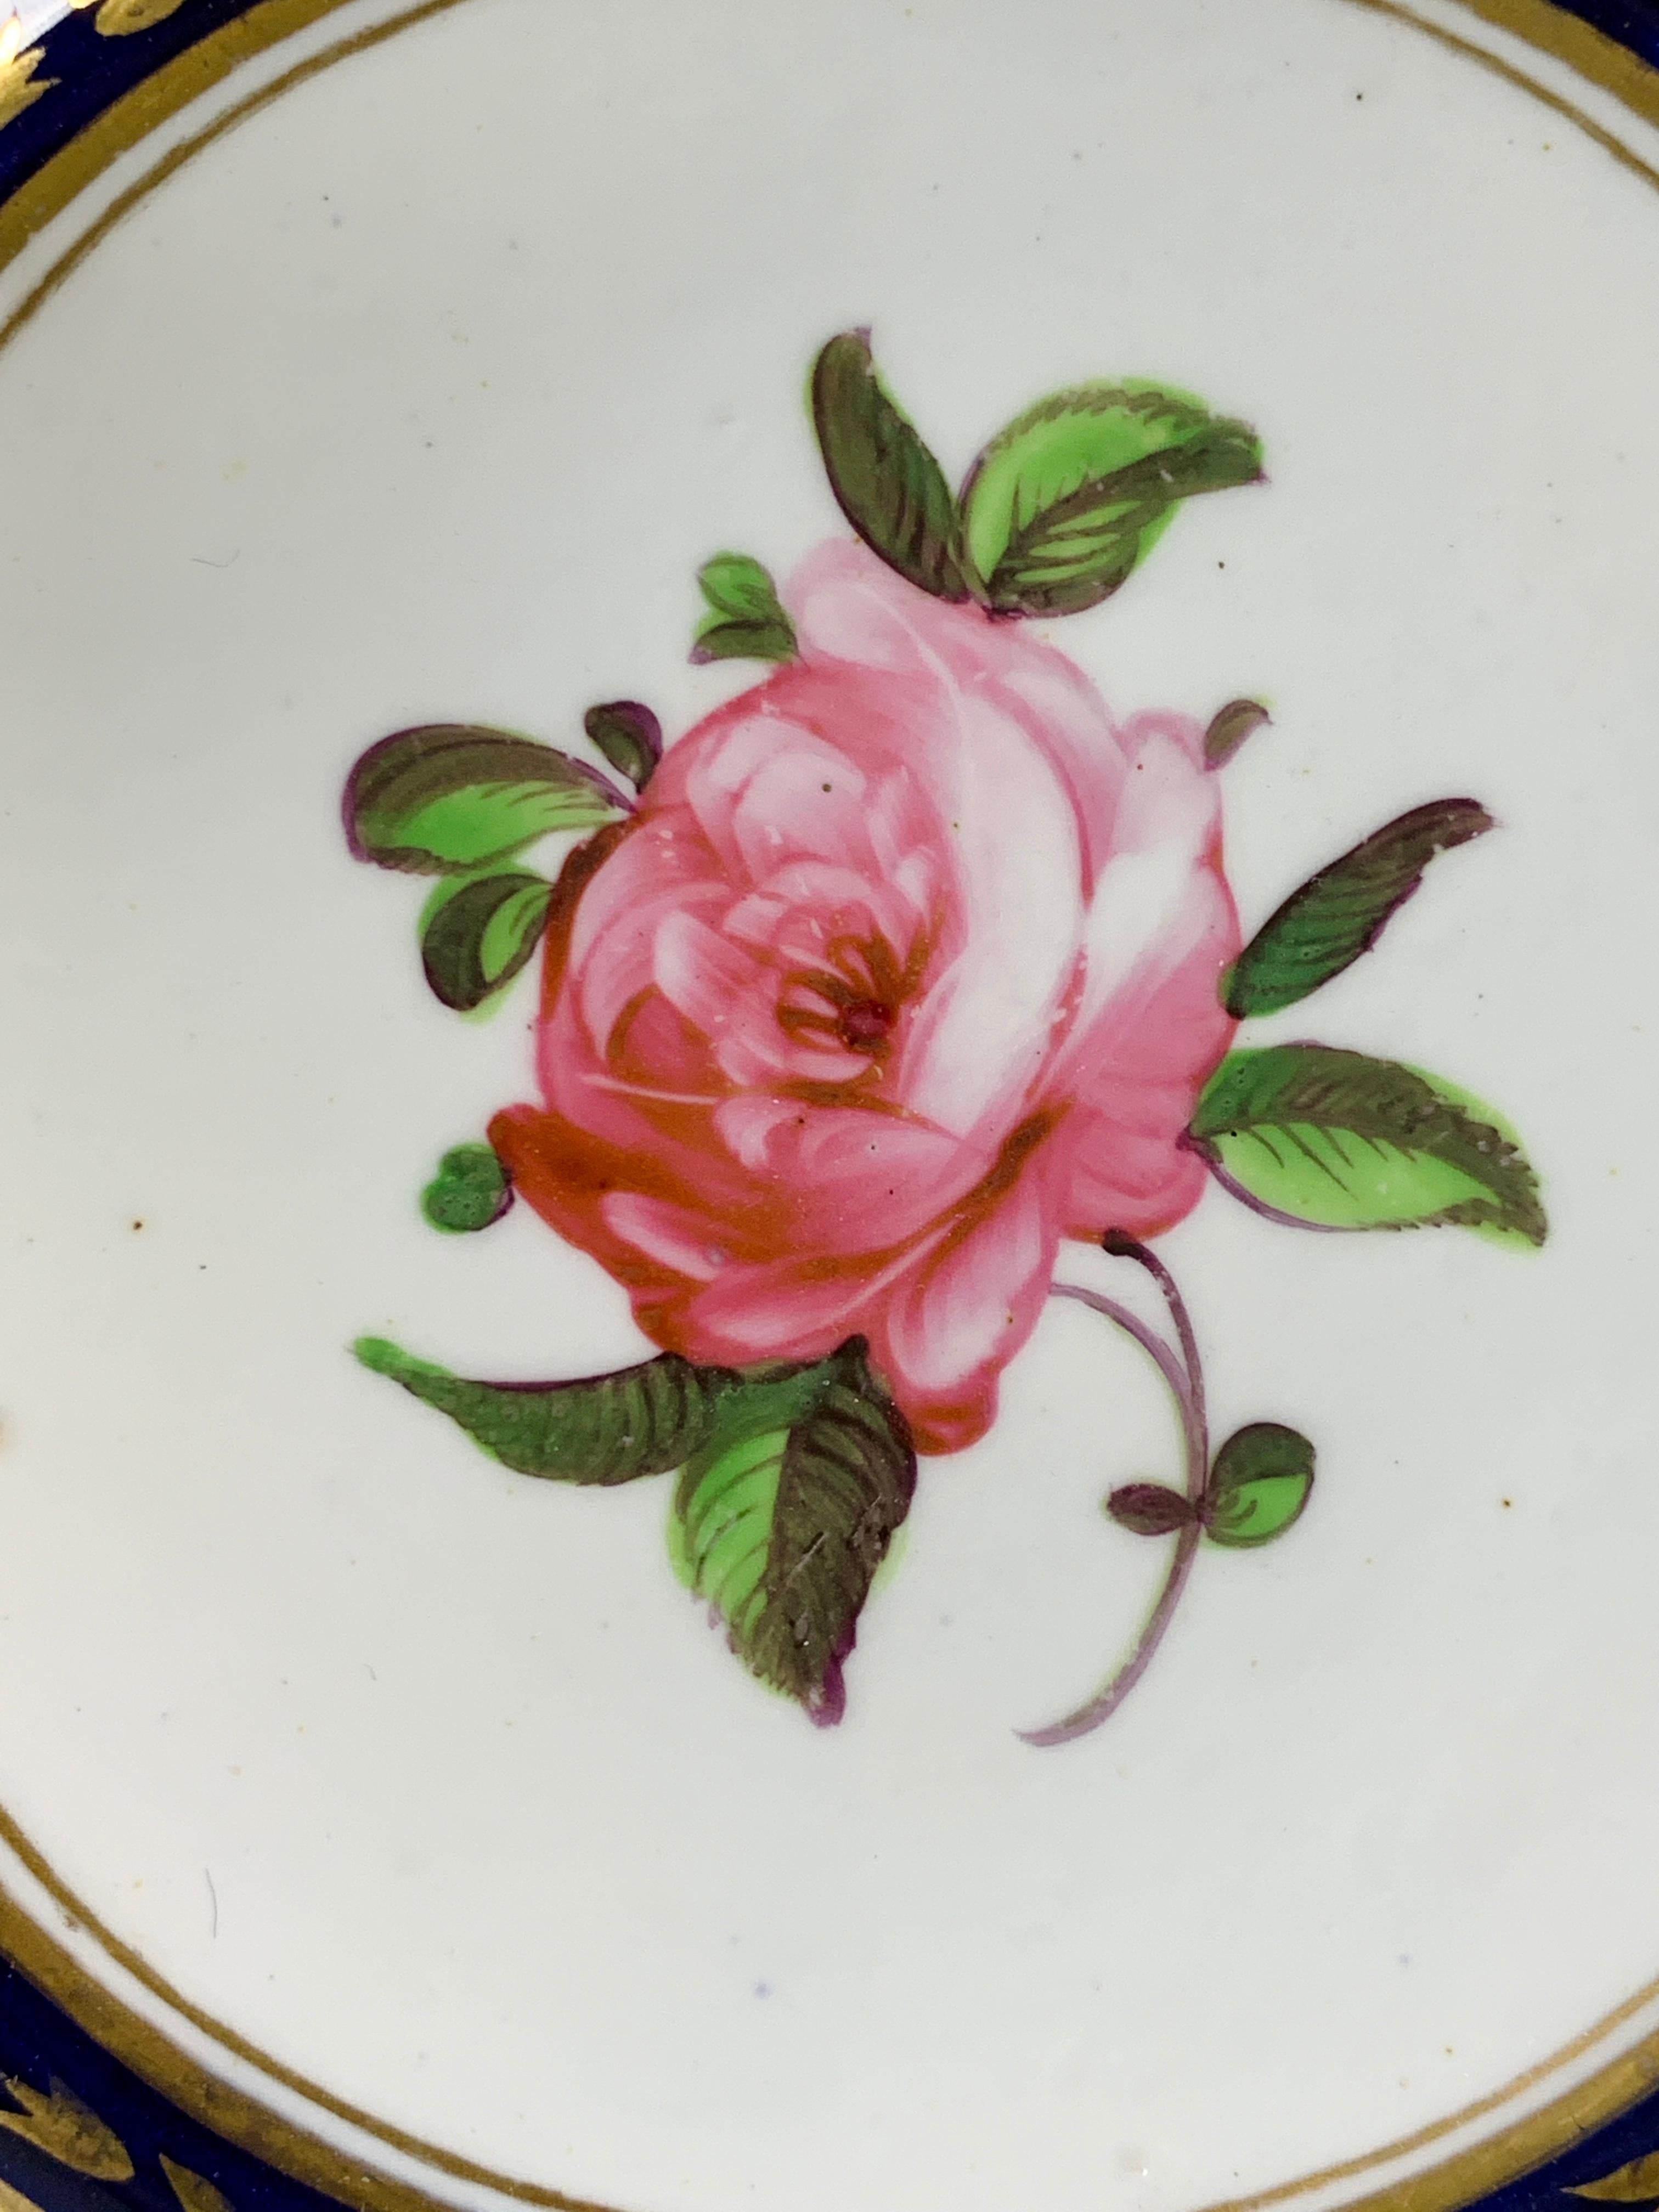 Un délicieux plat en porcelaine anglaise fabriqué vers 1820 et peint à la main avec des fleurs exquises sur une porcelaine d'un blanc éclatant.
Au centre se trouve une belle rose rose. D'autres roses, des myosotis et d'autres fleurs avec des vignes